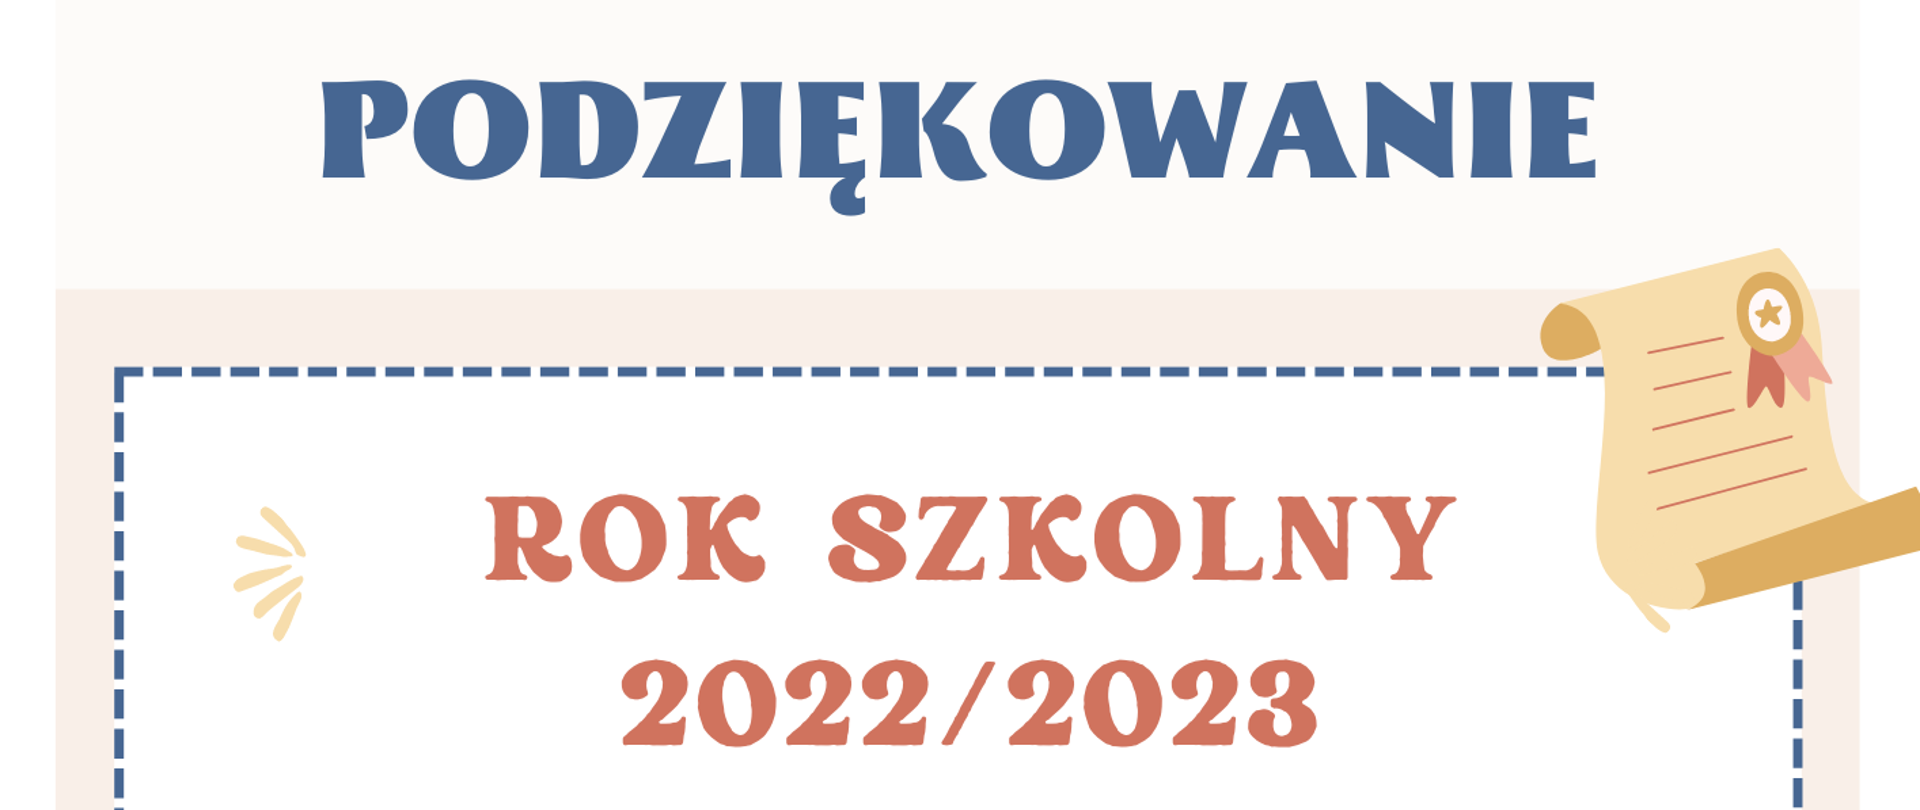 Plakat na białym tle z informacją tekstową dotyczącą podziękowań od Samorządu Uczniowskiego za cały rok szkolny 2022-2023